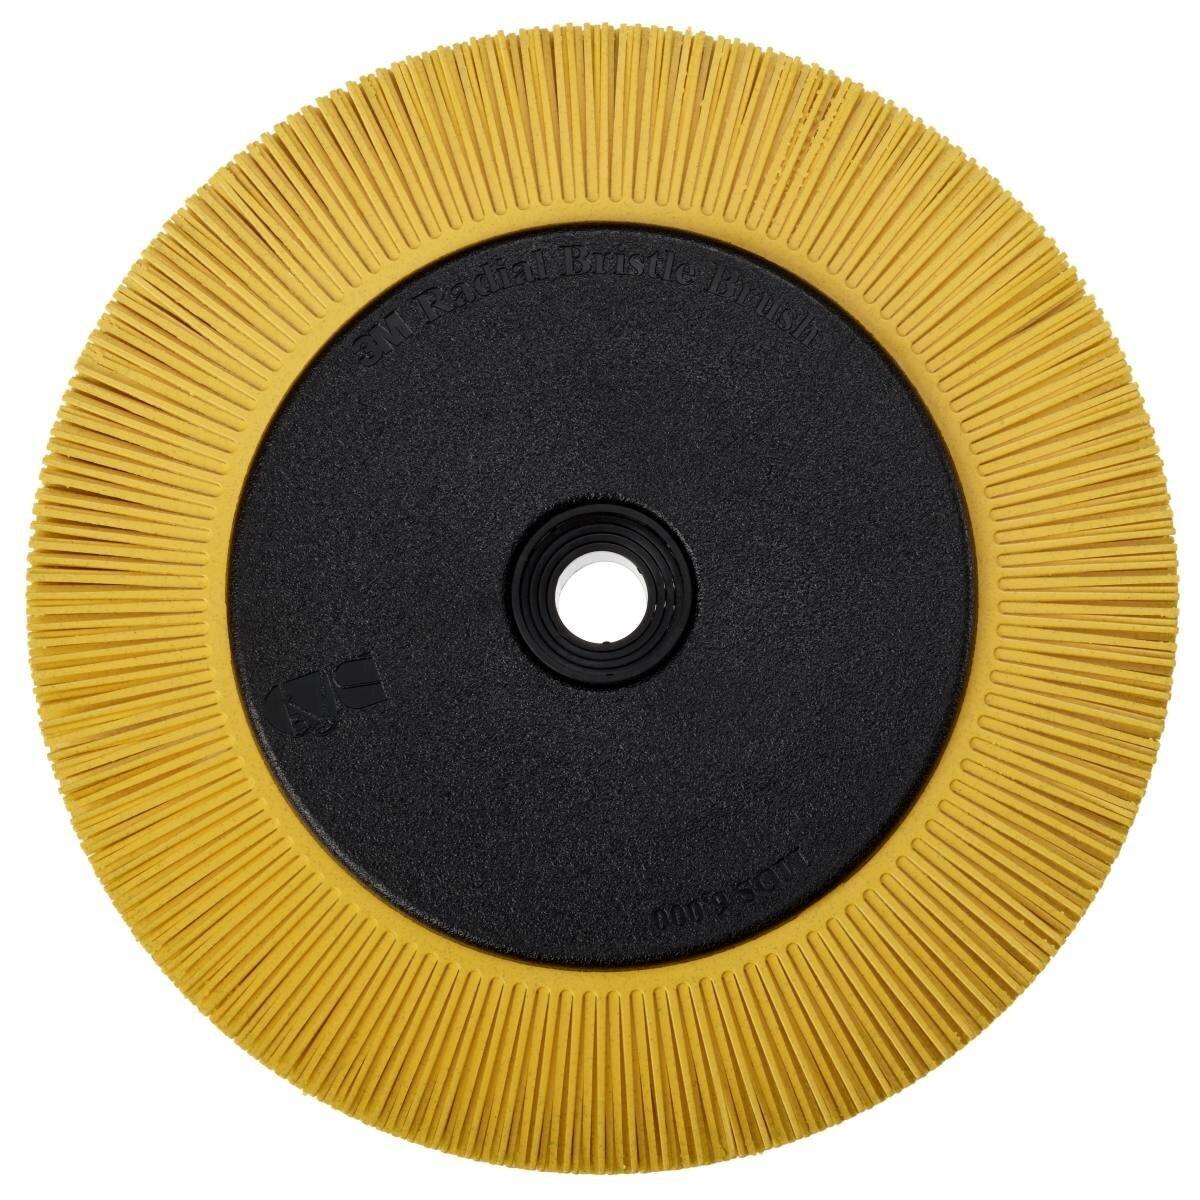 3M Scotch-Brite Radial Bristle Disc BB-ZB mit Flansch, gelb, 203,2 mm, P80, Typ S #33082